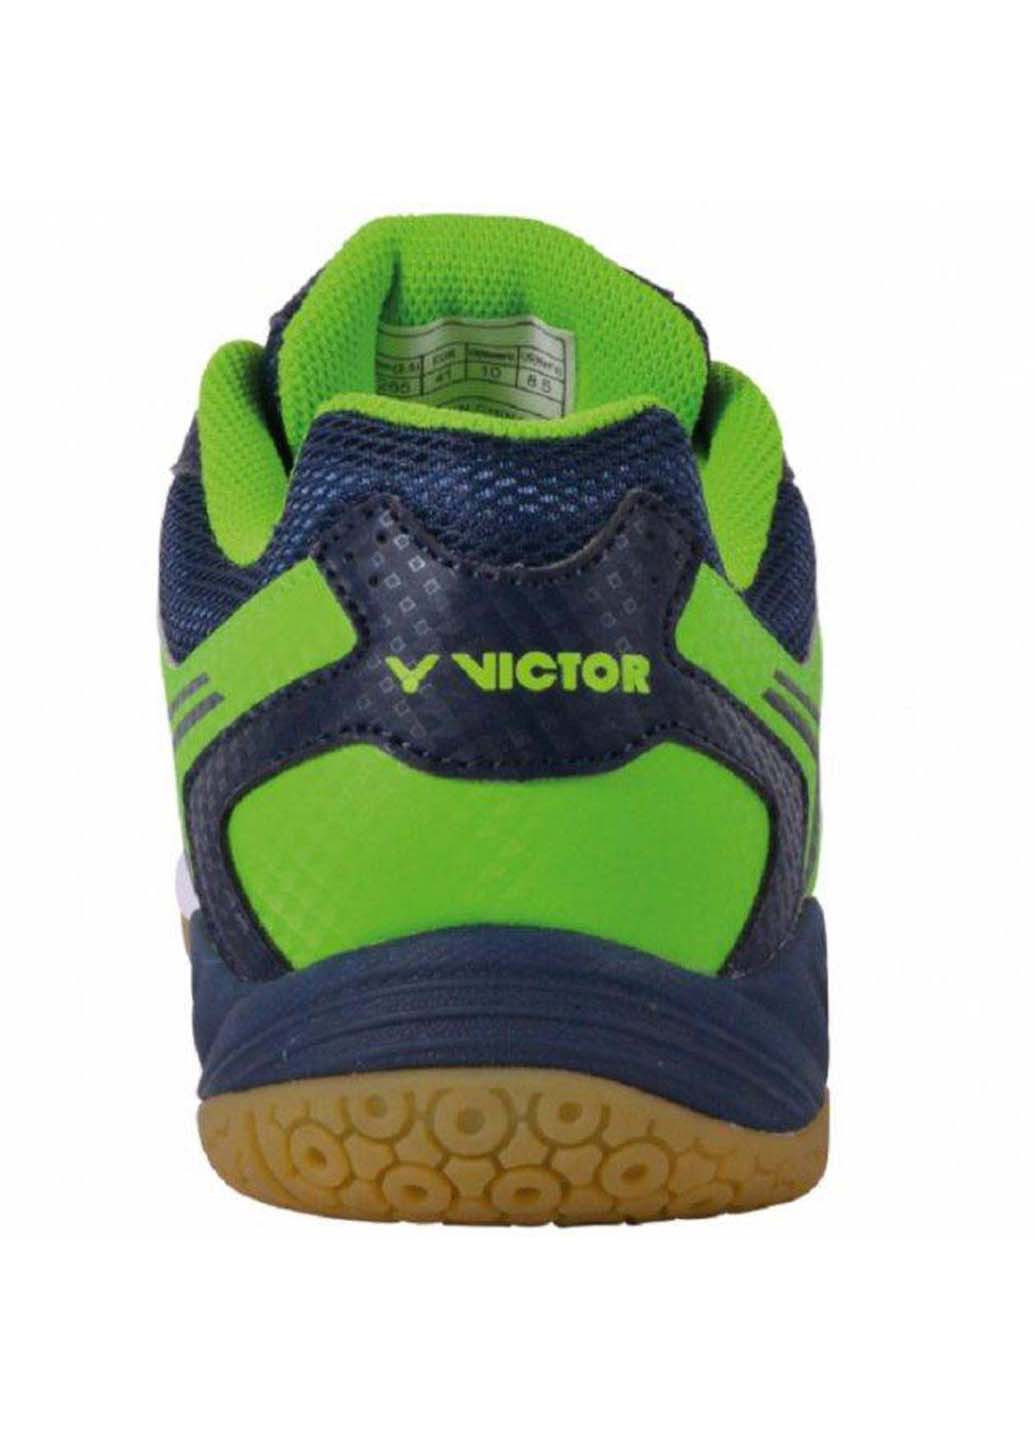 Цветные всесезонные кроссовки для сквоша Victor A501 Indoor